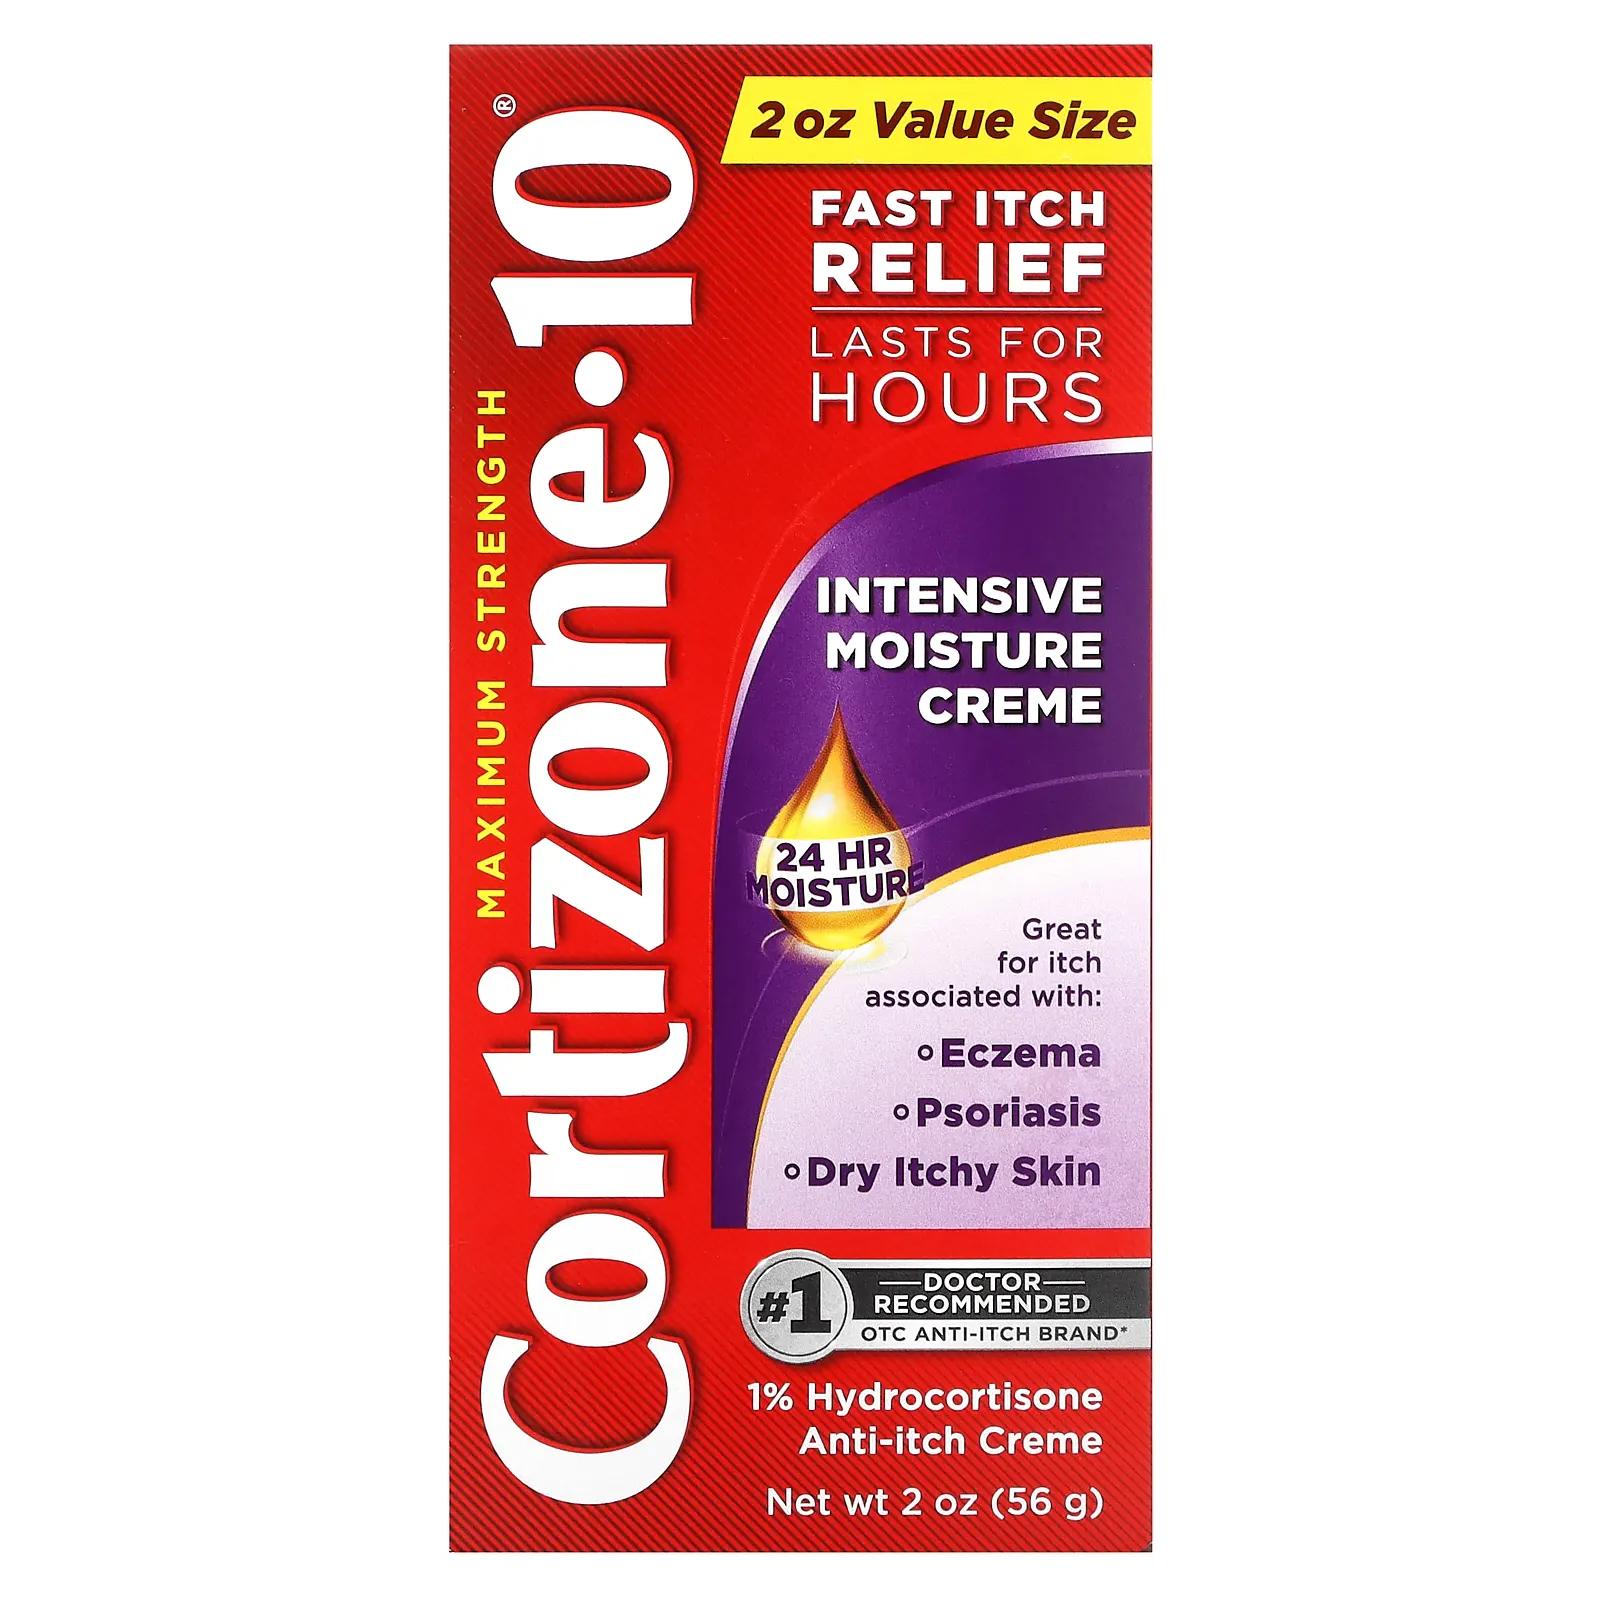 Cortizone 10 Maximum Strength интенсивный увлажняющий крем 56 г (2 унции) cortizone 10 интенсивный лечебный лосьон от экземы максимальная сила 3 5 унции 99 г